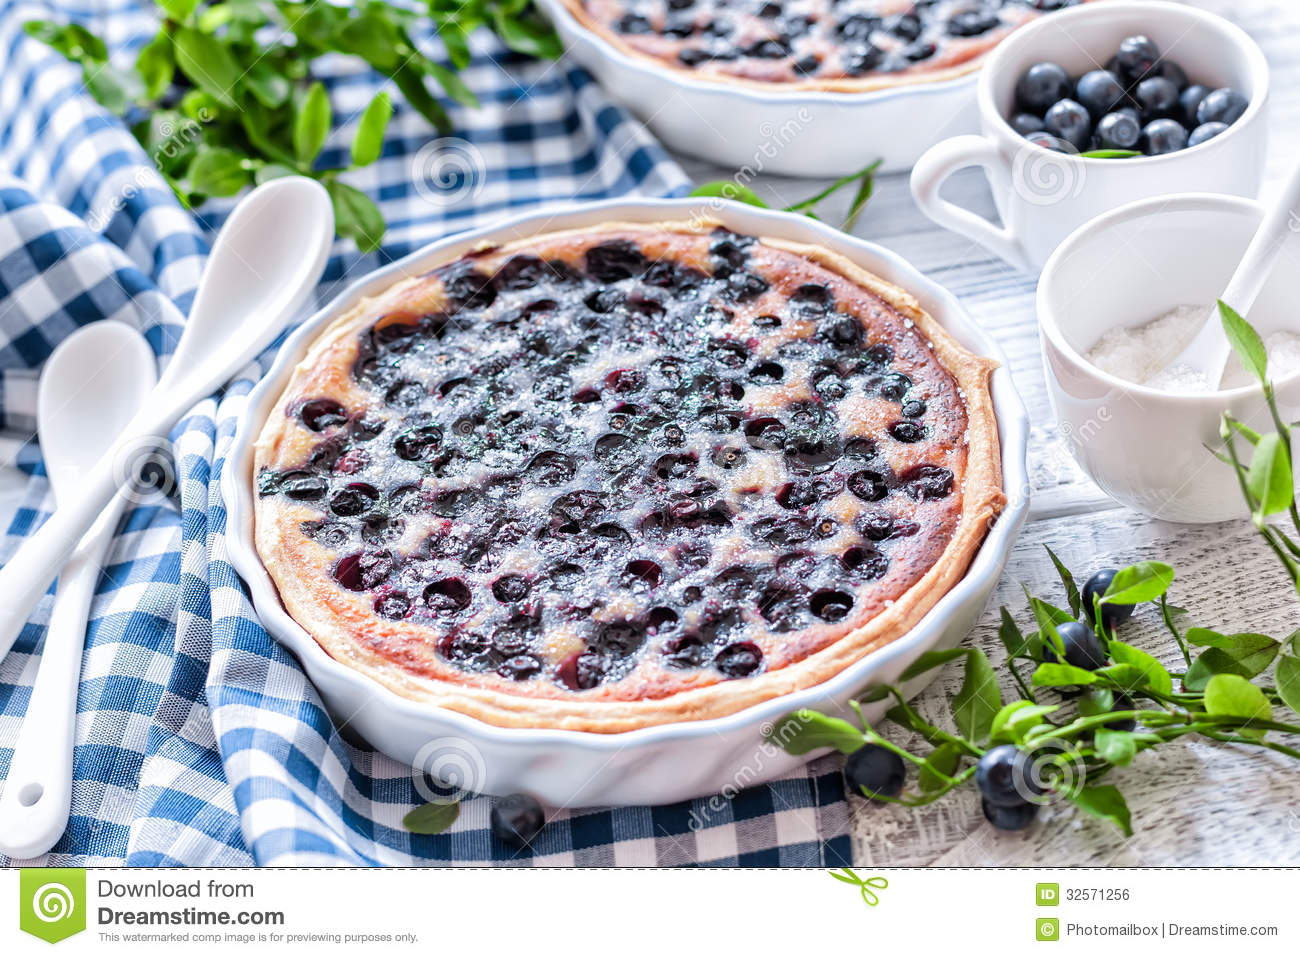 Blueberry Cake Royalty Free Stock Image   Image  32571256